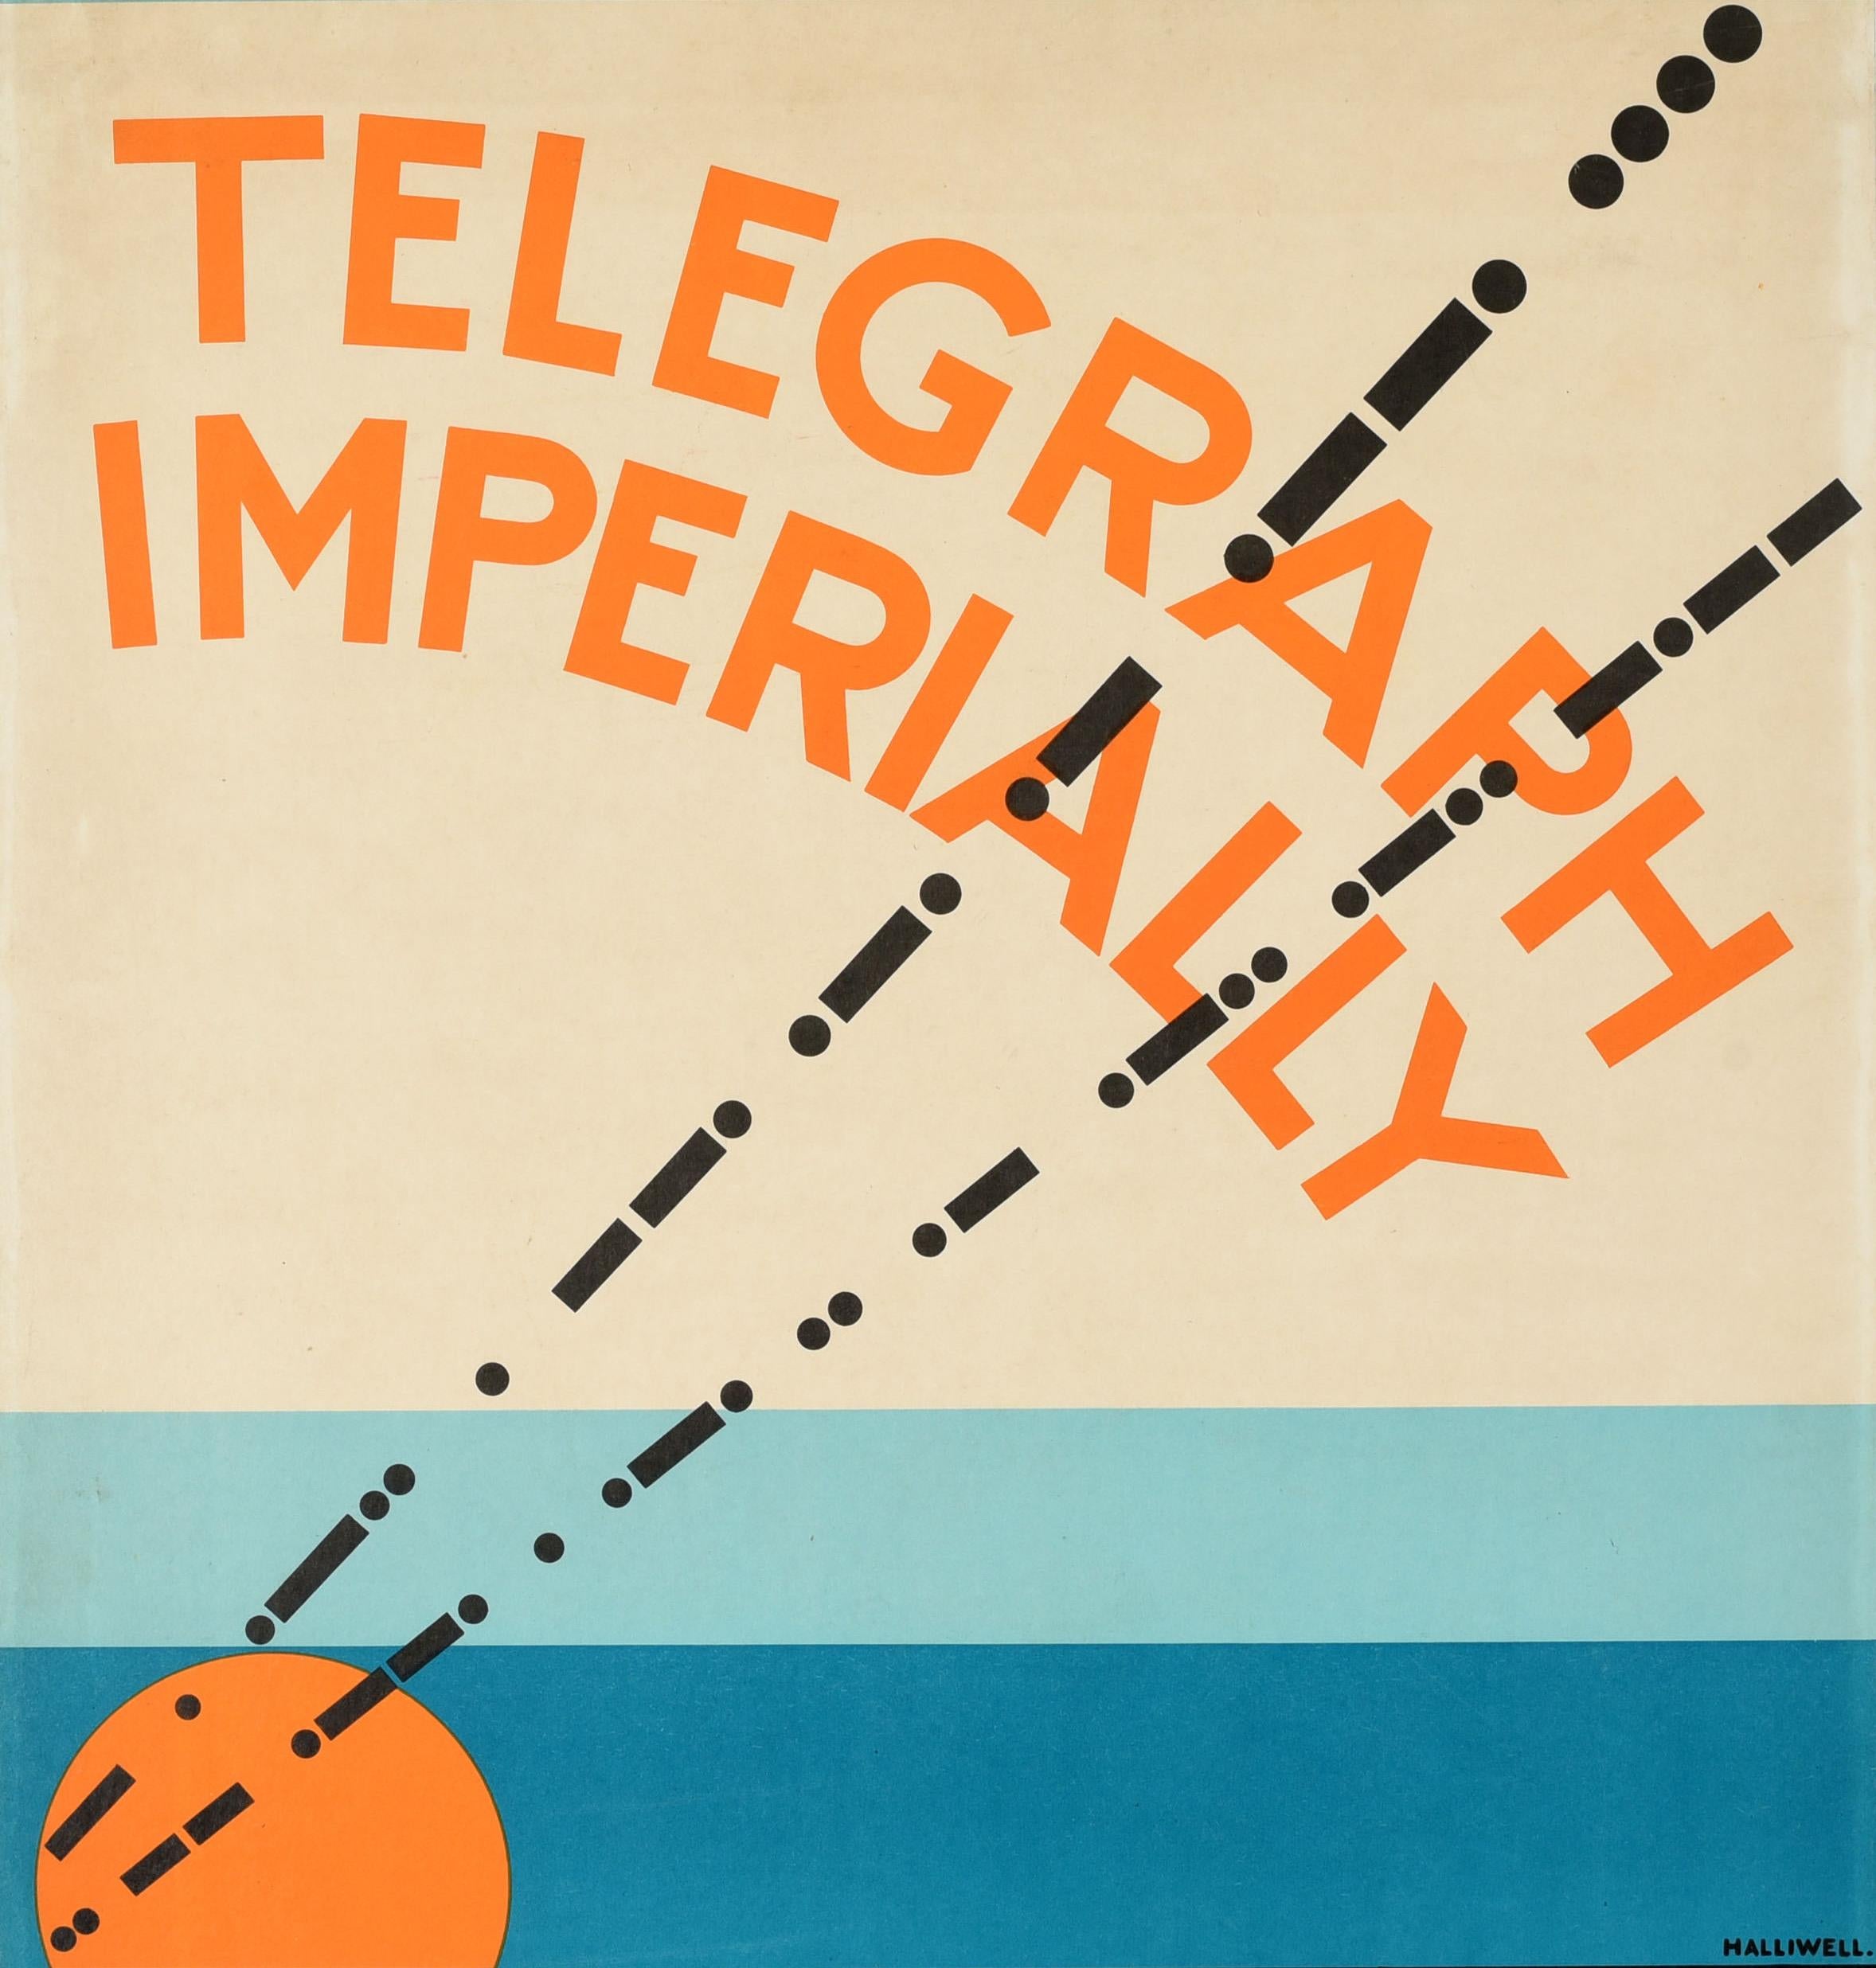 Affiche publicitaire originale vintage Telegraph Imperially de Marconi, design Art Dco - Print de A.E. Halliwell